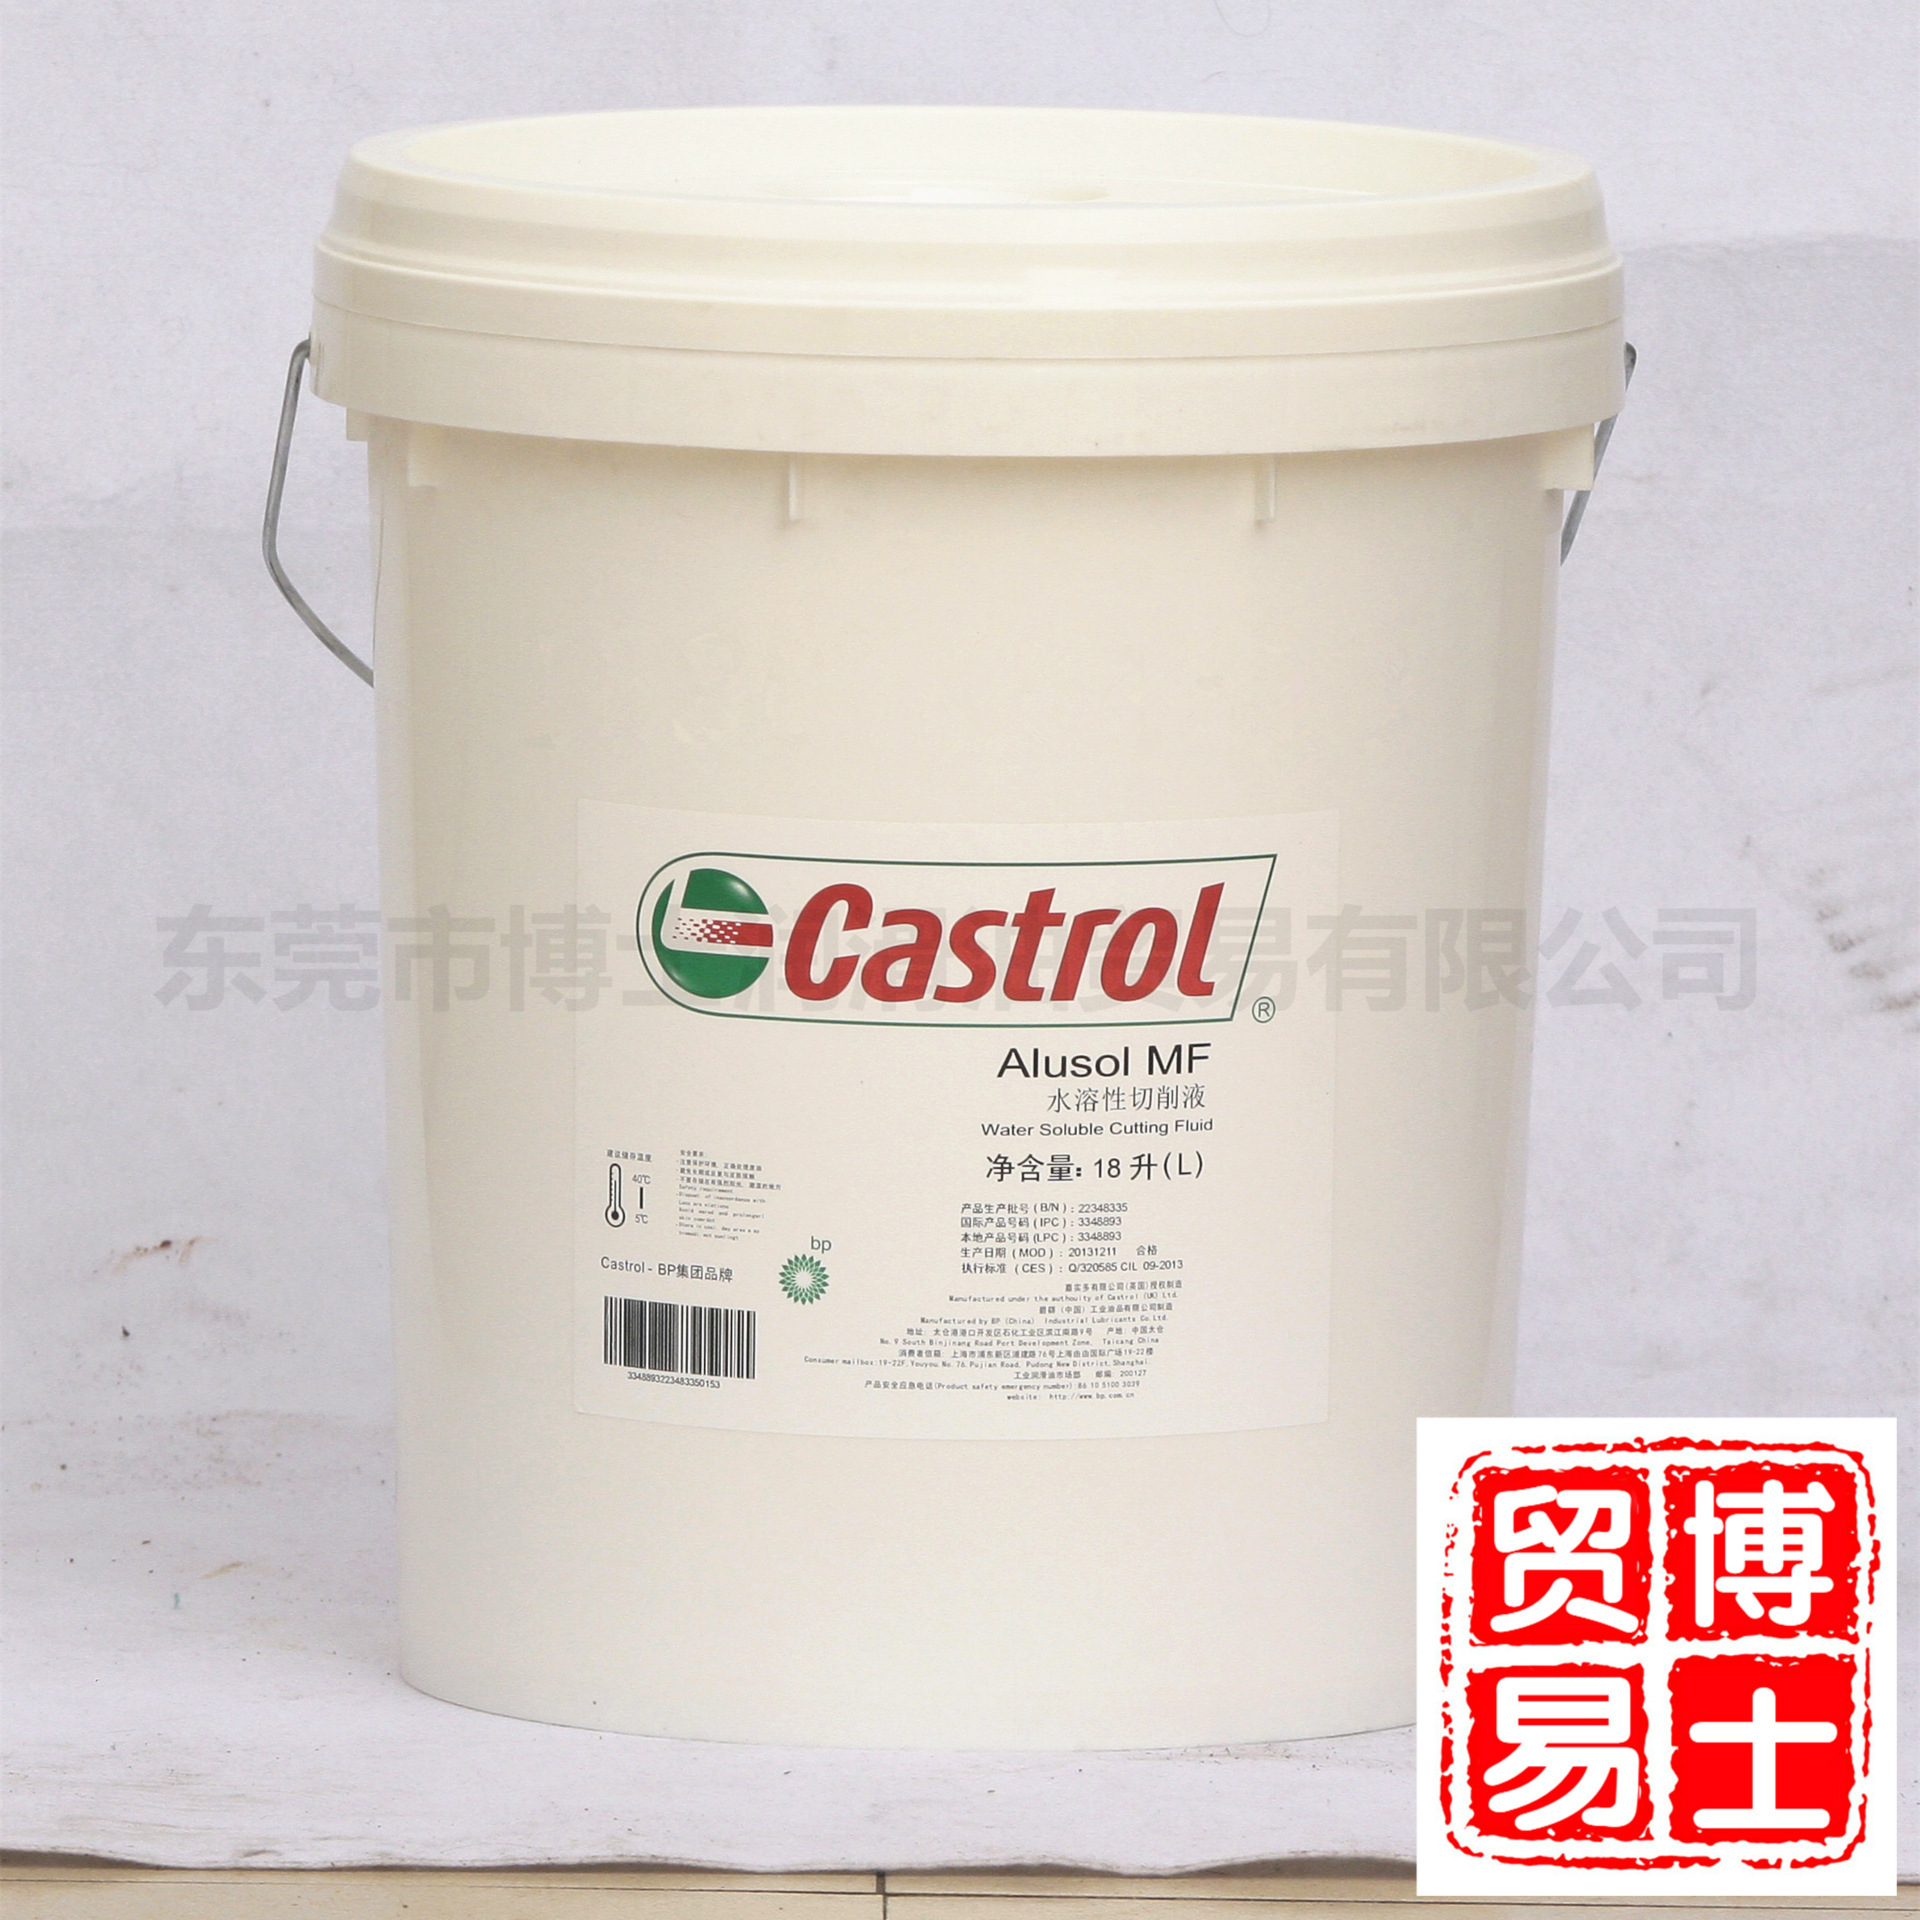 嘉实多Castrol Alusol MF半合成水溶性切削油 MF高性能金属加工液